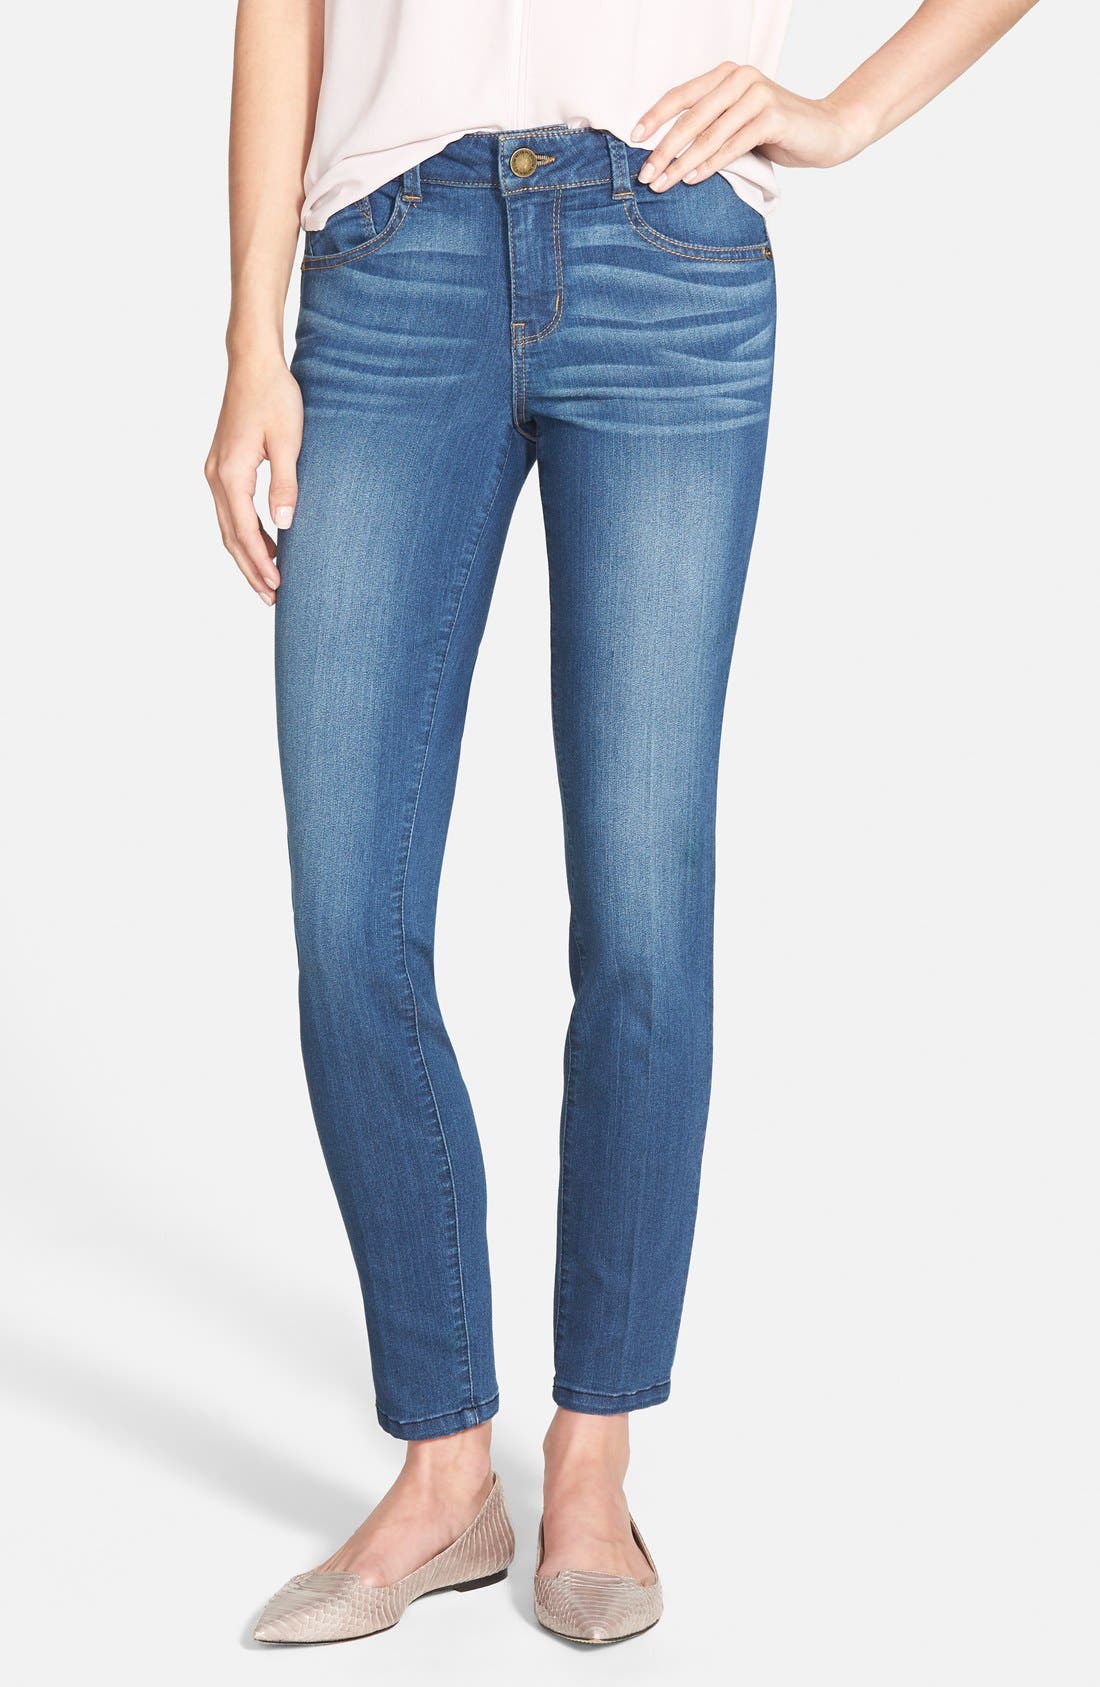 topshop lucas jeans